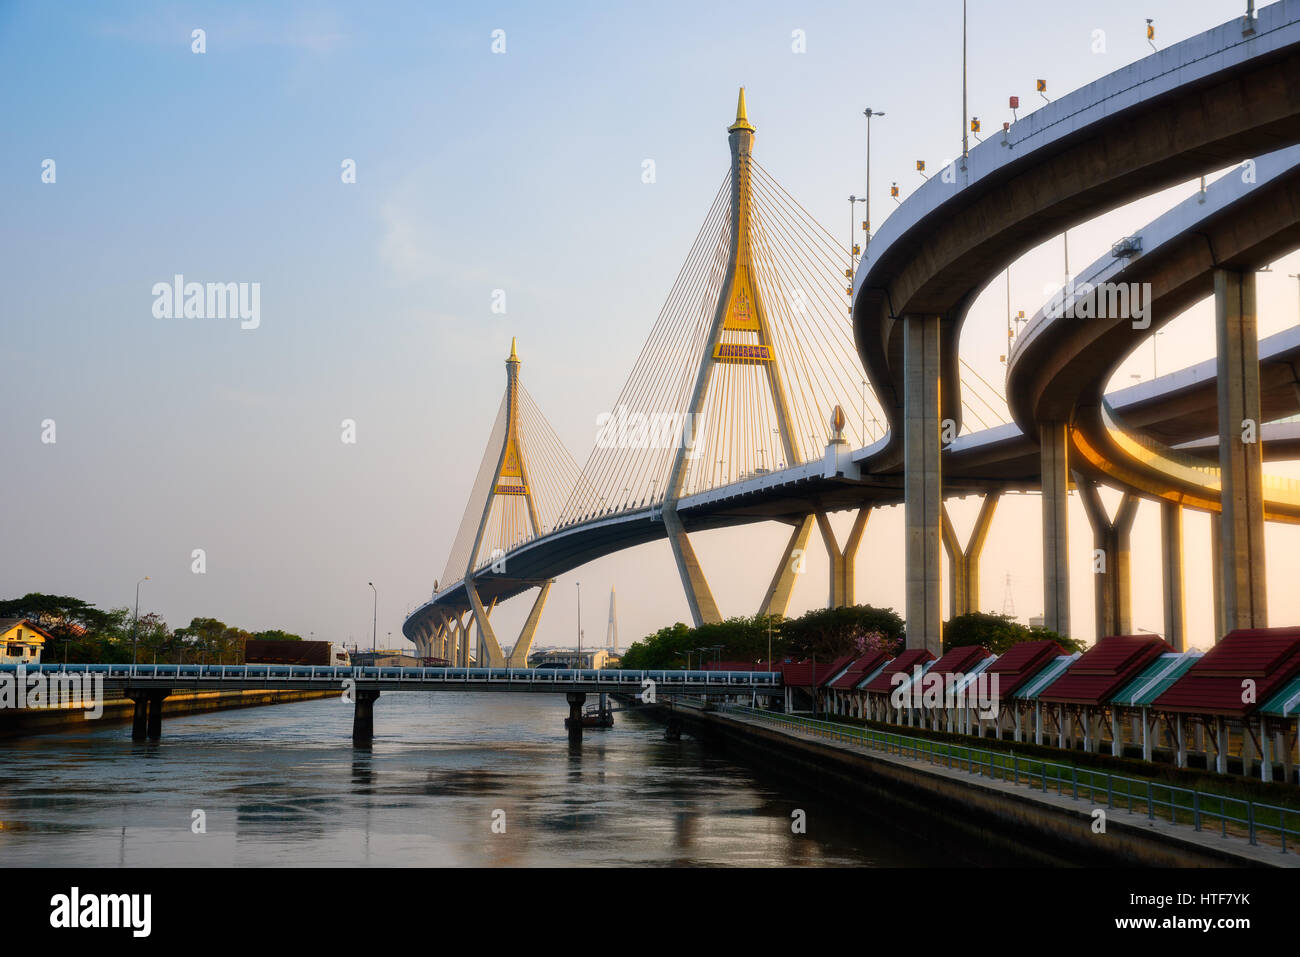 LKW Mini-Brücke, die unter der großen Brücke Bhumibol Brücke in Bangkok, Thailand nennen. Am Abend machen Sonne Licht weichen und goldenen Ton an der Brücke Stockfoto